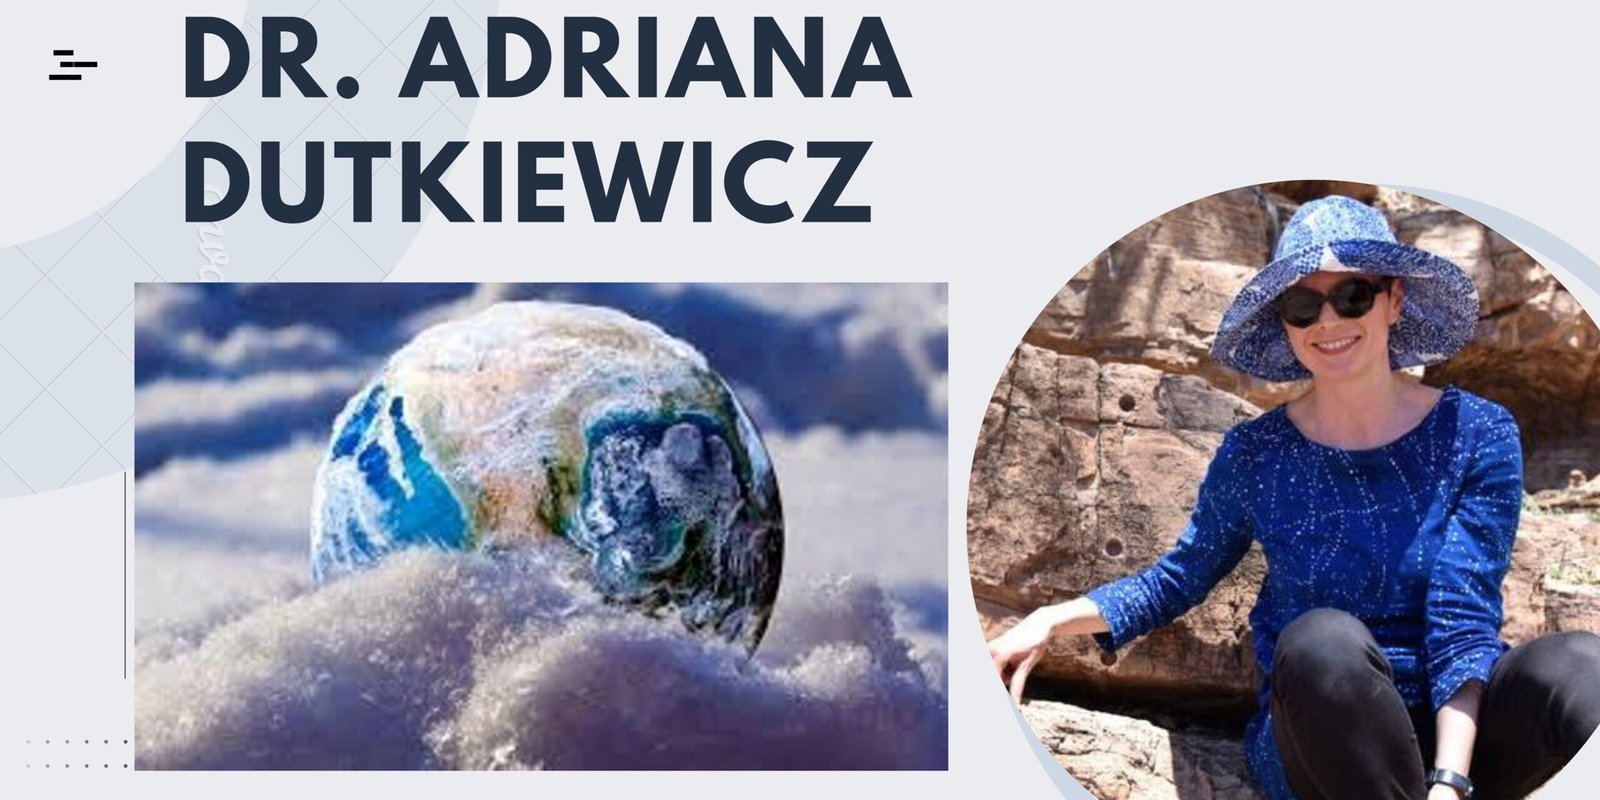 डॉ. एड्रियाना डुट्कीविच जिन्होंने पृथ्वी (earth) के इस रहस्य को सुलझाया 